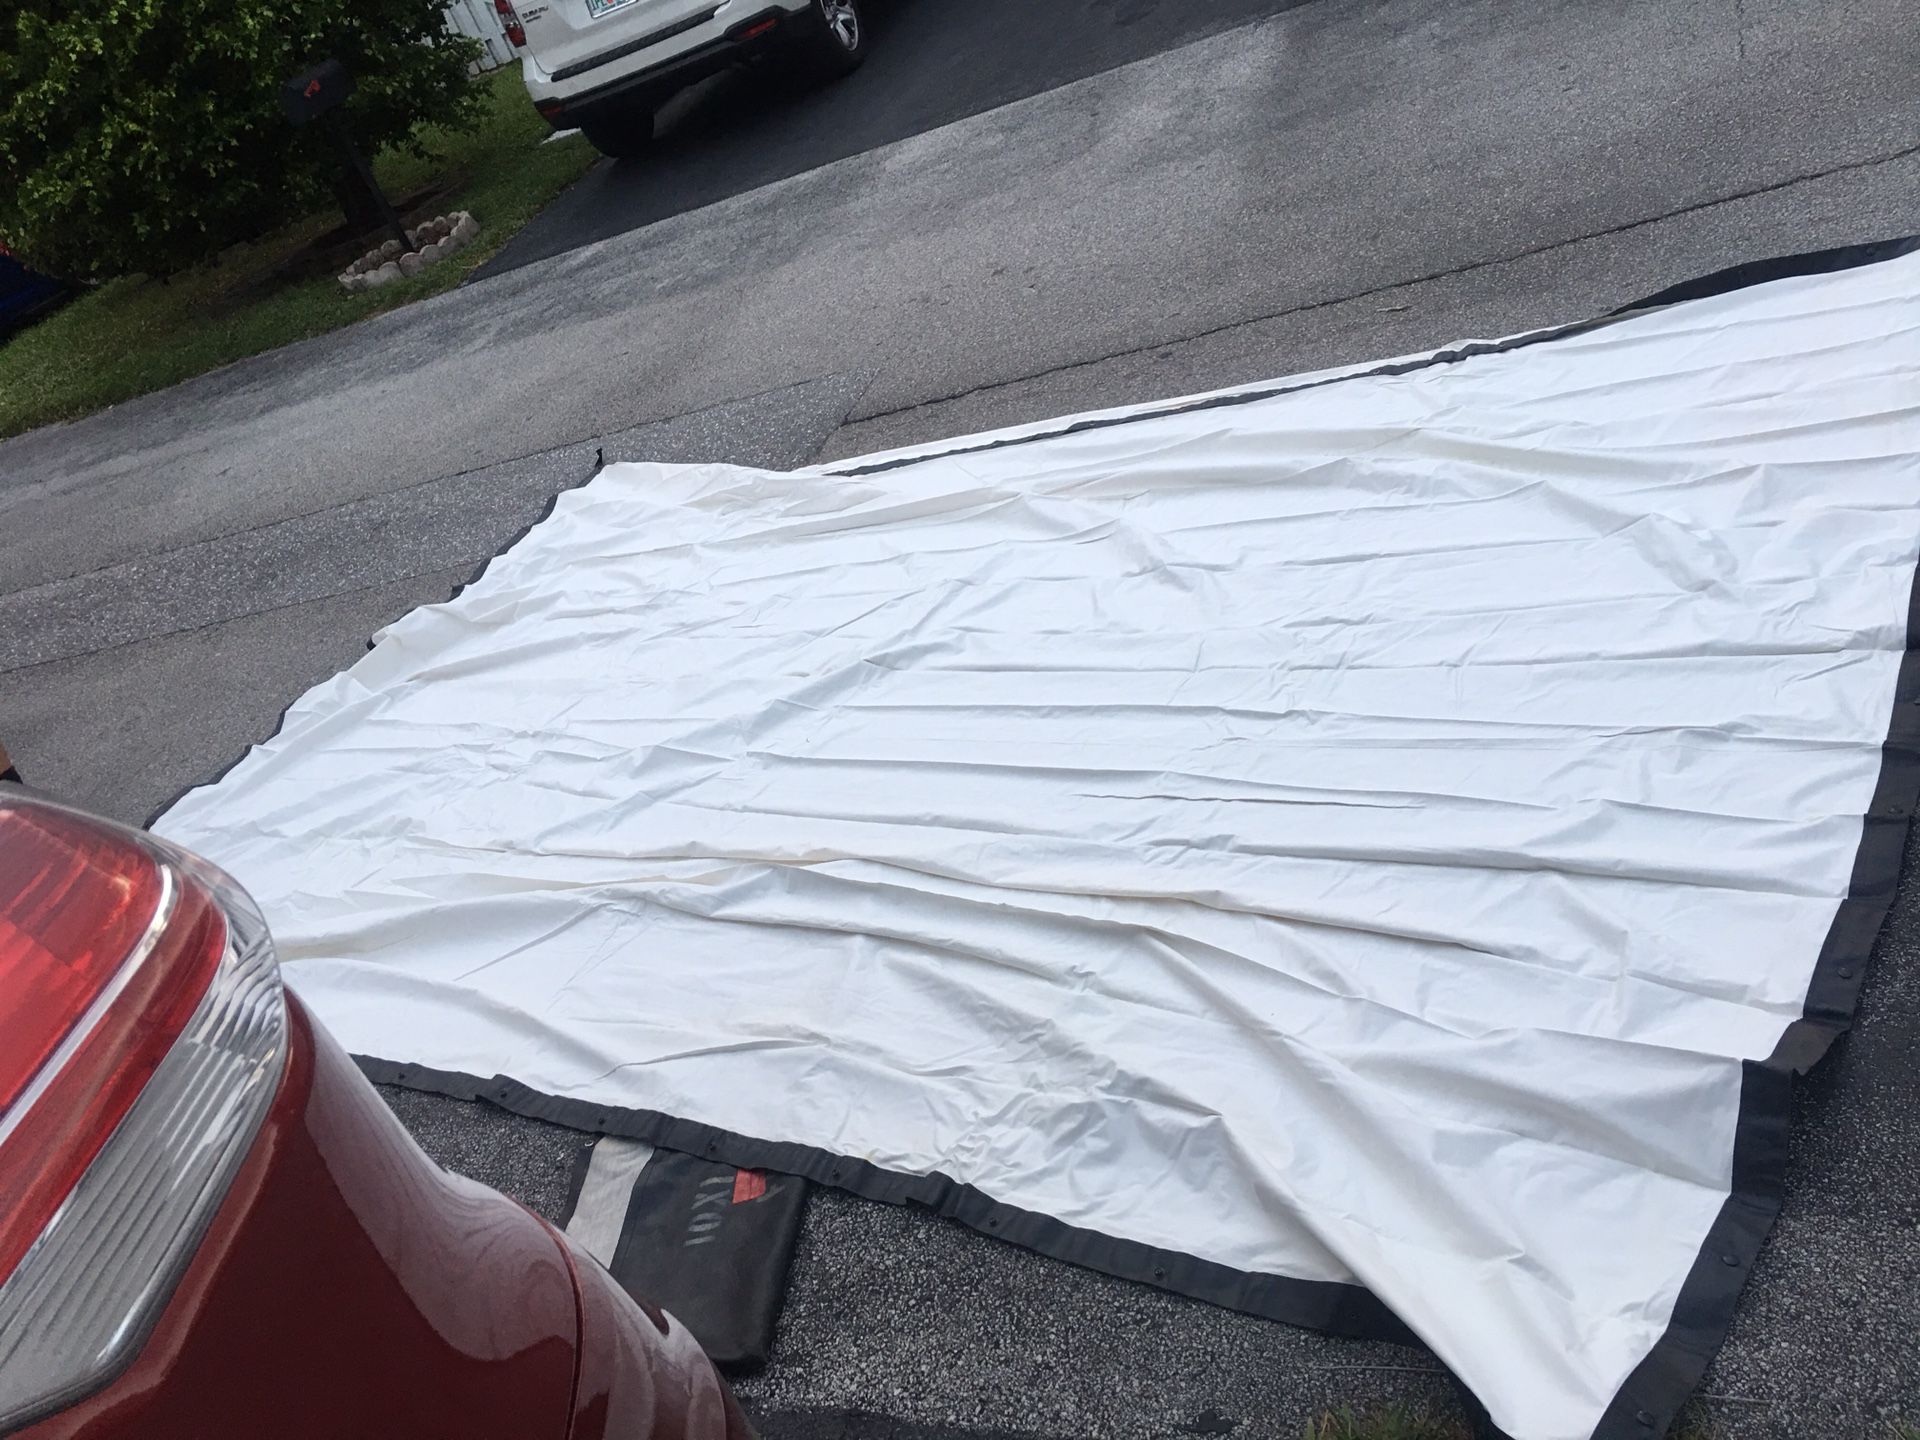 White tarps heavy duty screens will protect from rain